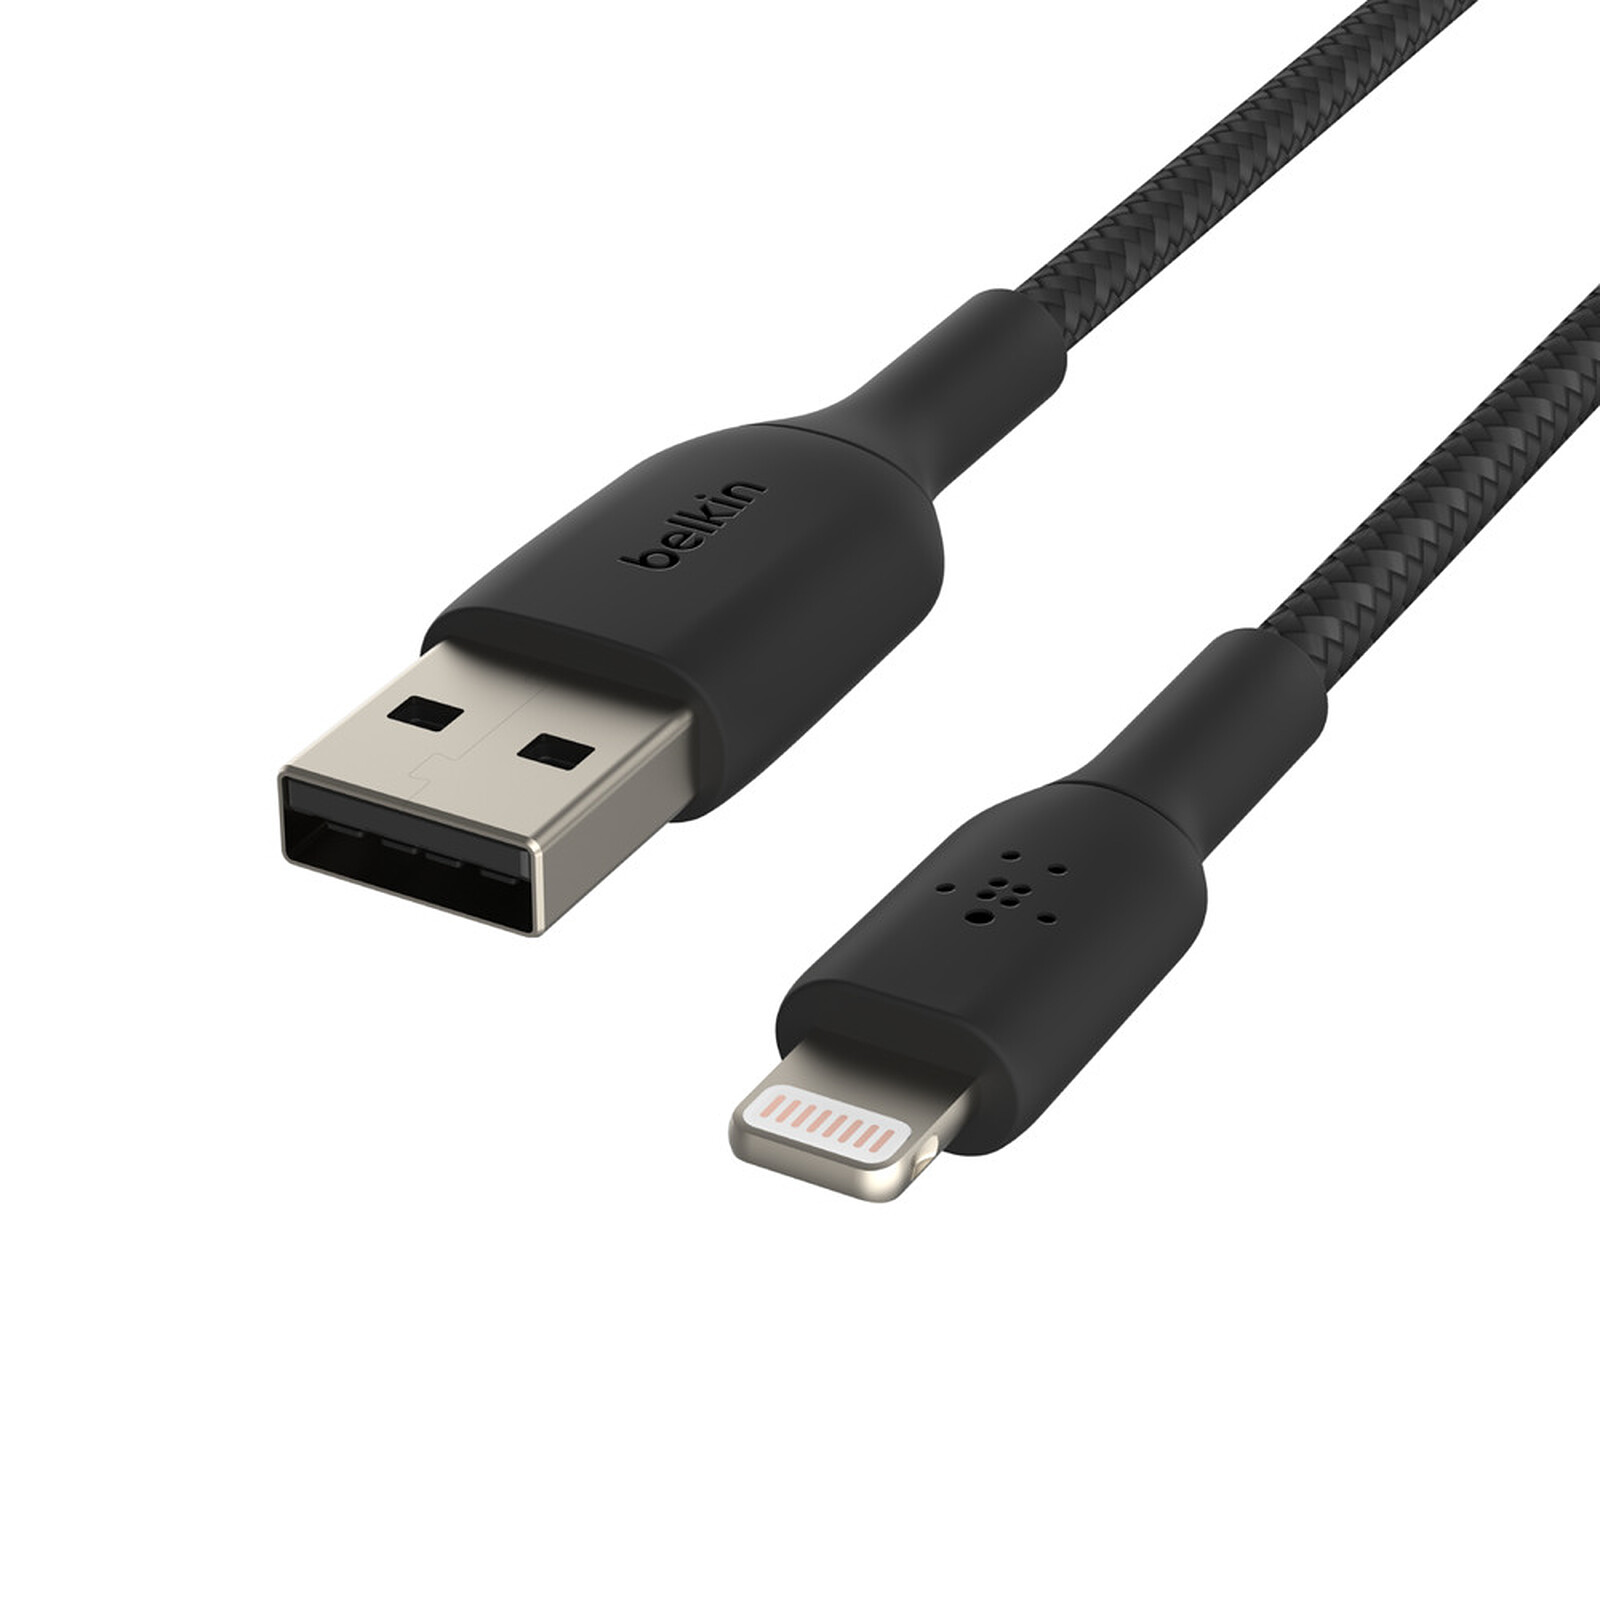 Cable Startech para iPhone / iPad / iPod de Carga Rápida Certificación MFi  de Apple - Negro